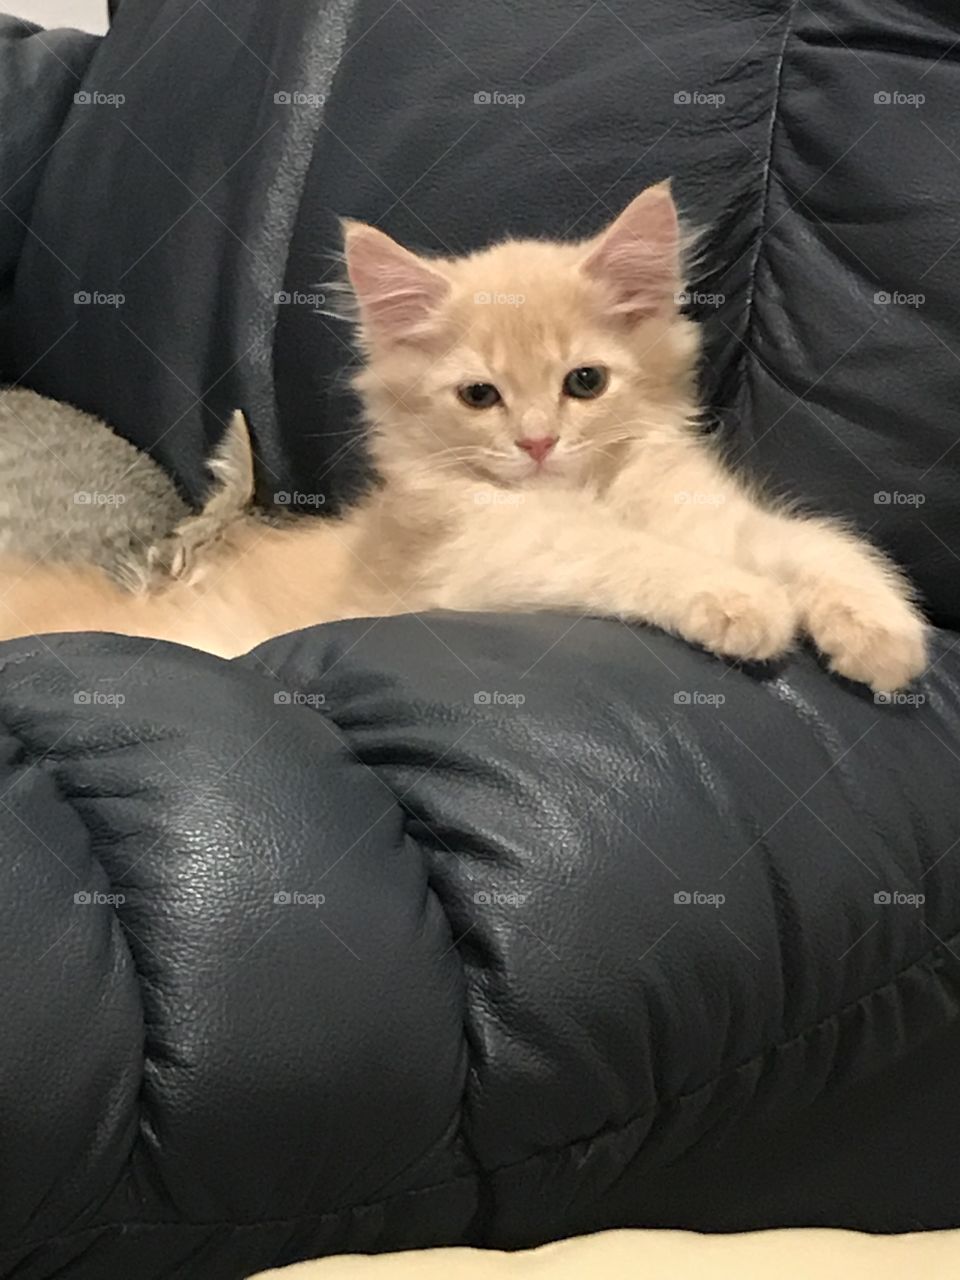 Kitten sitting up